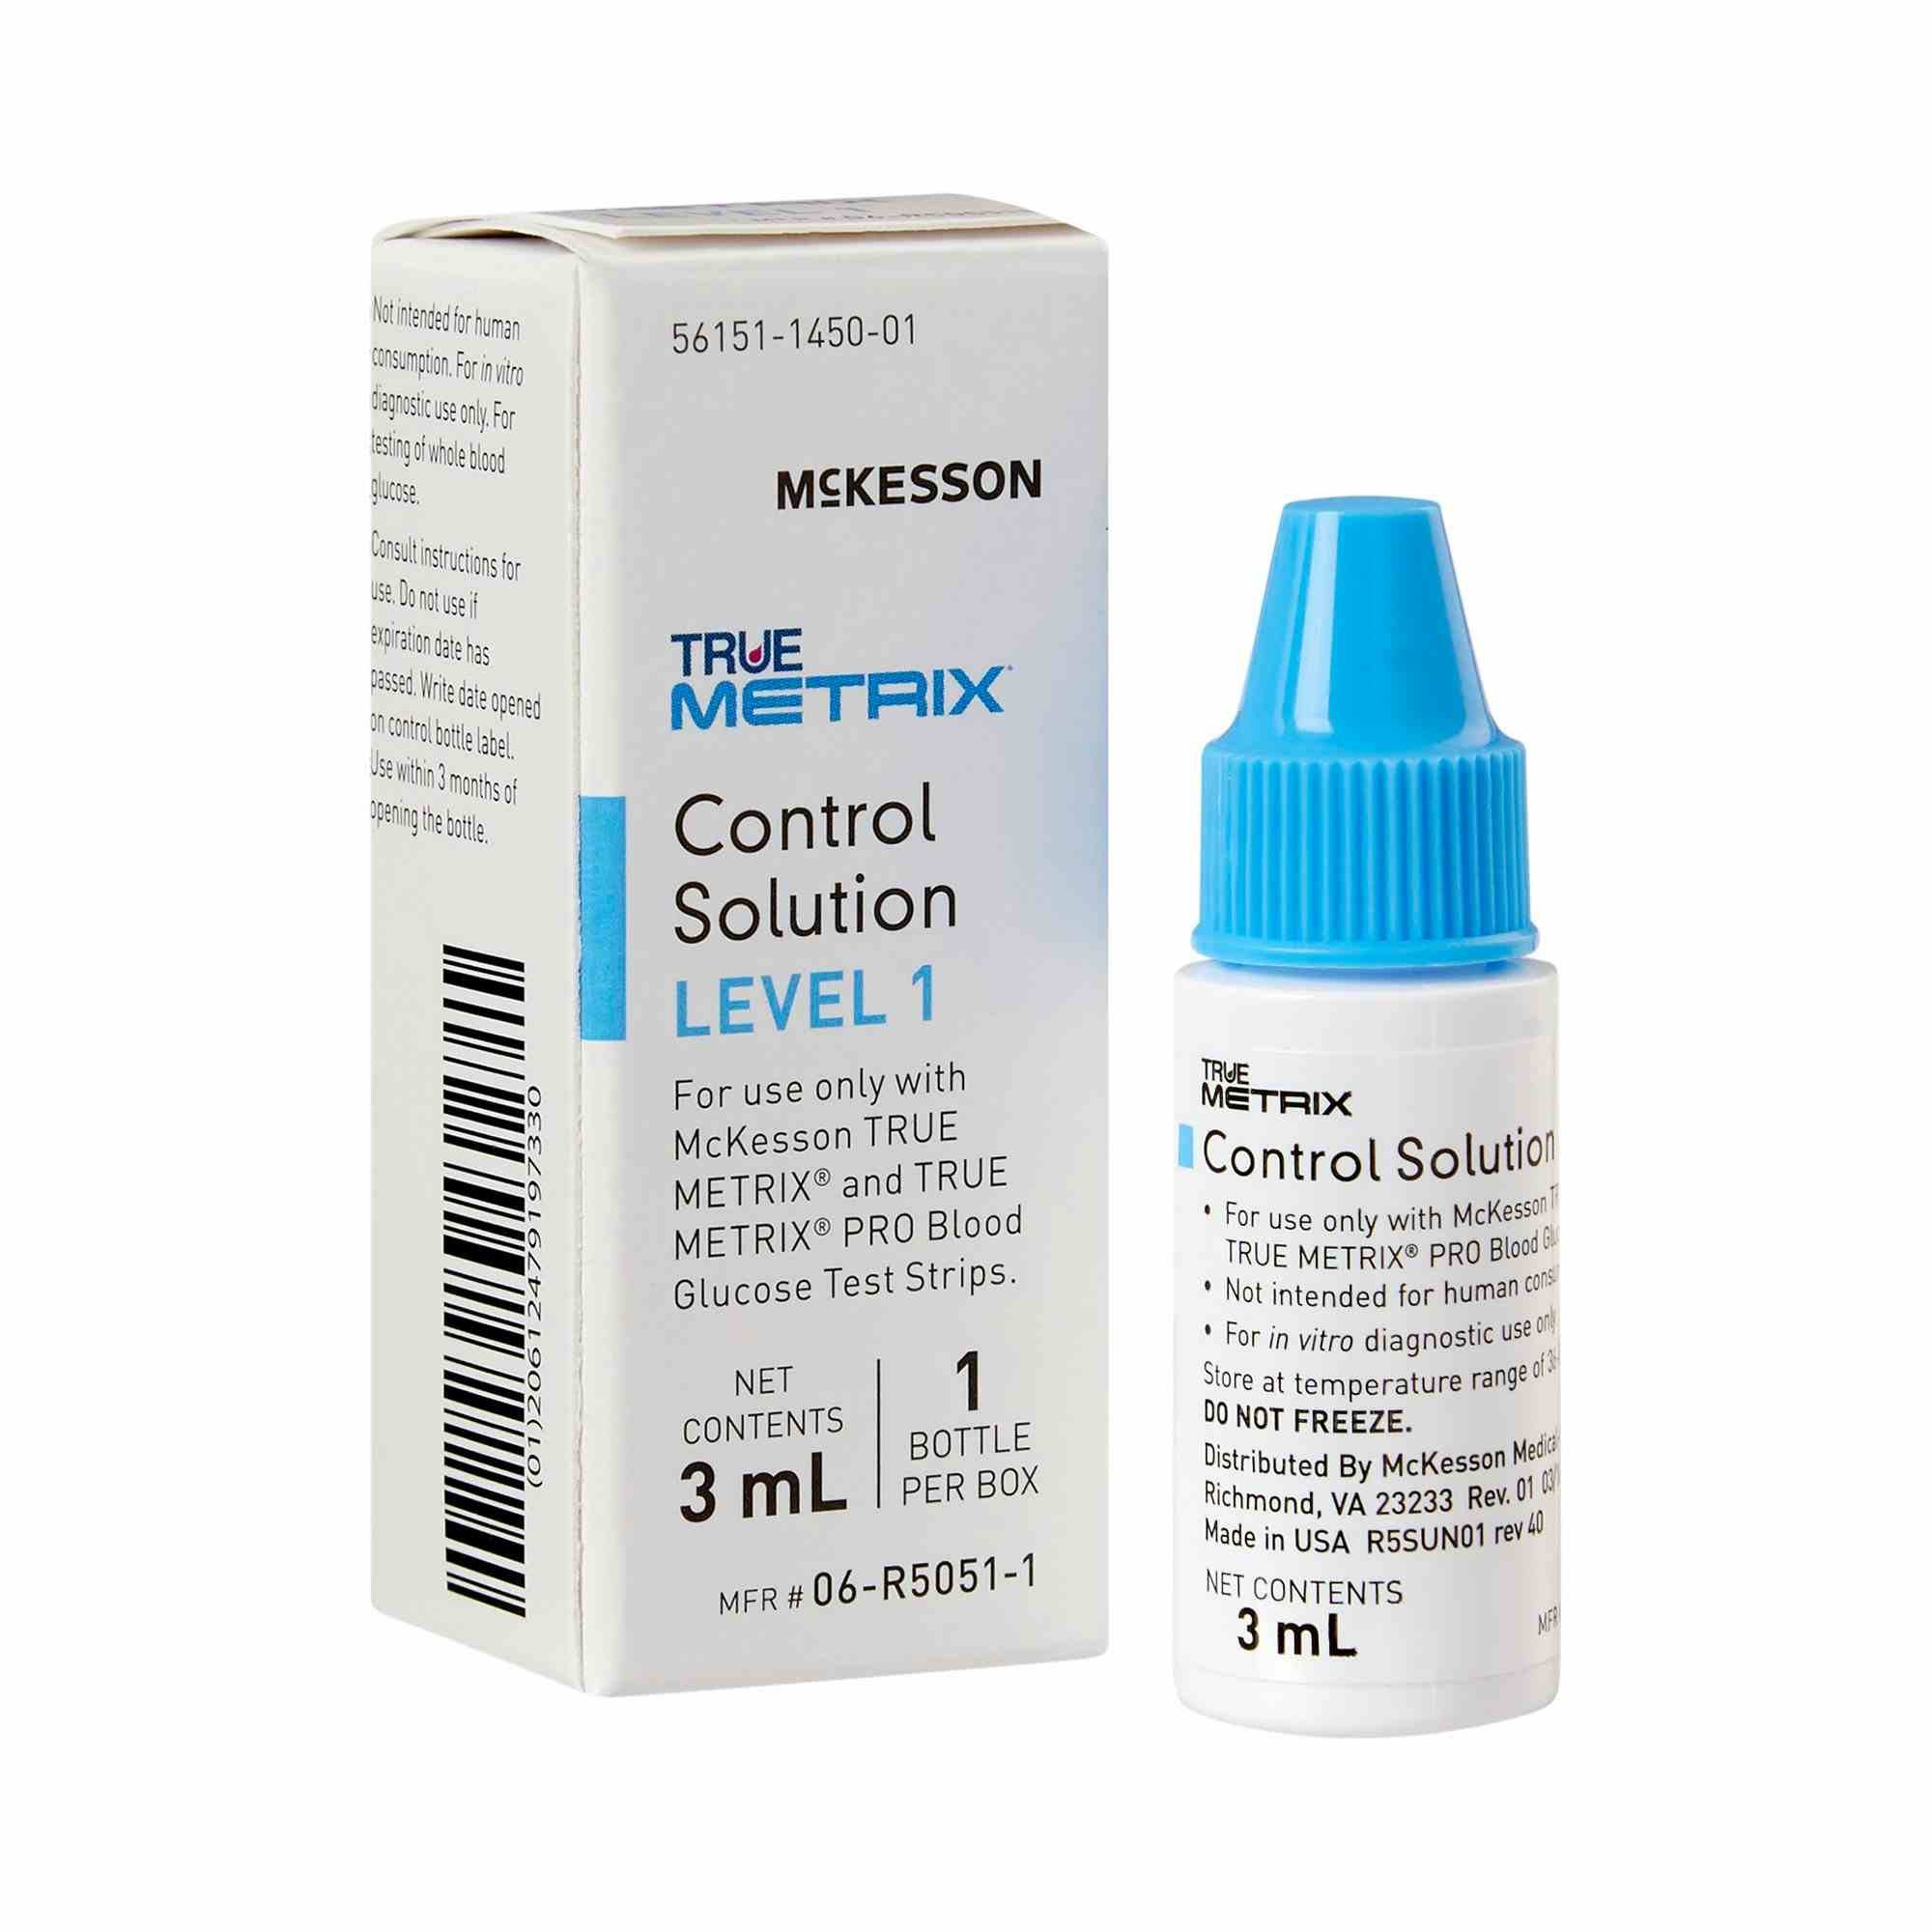 McKesson TRUE METRIX Control Solution, 3 mL Level 1, 06-R5051-1, 1 Box